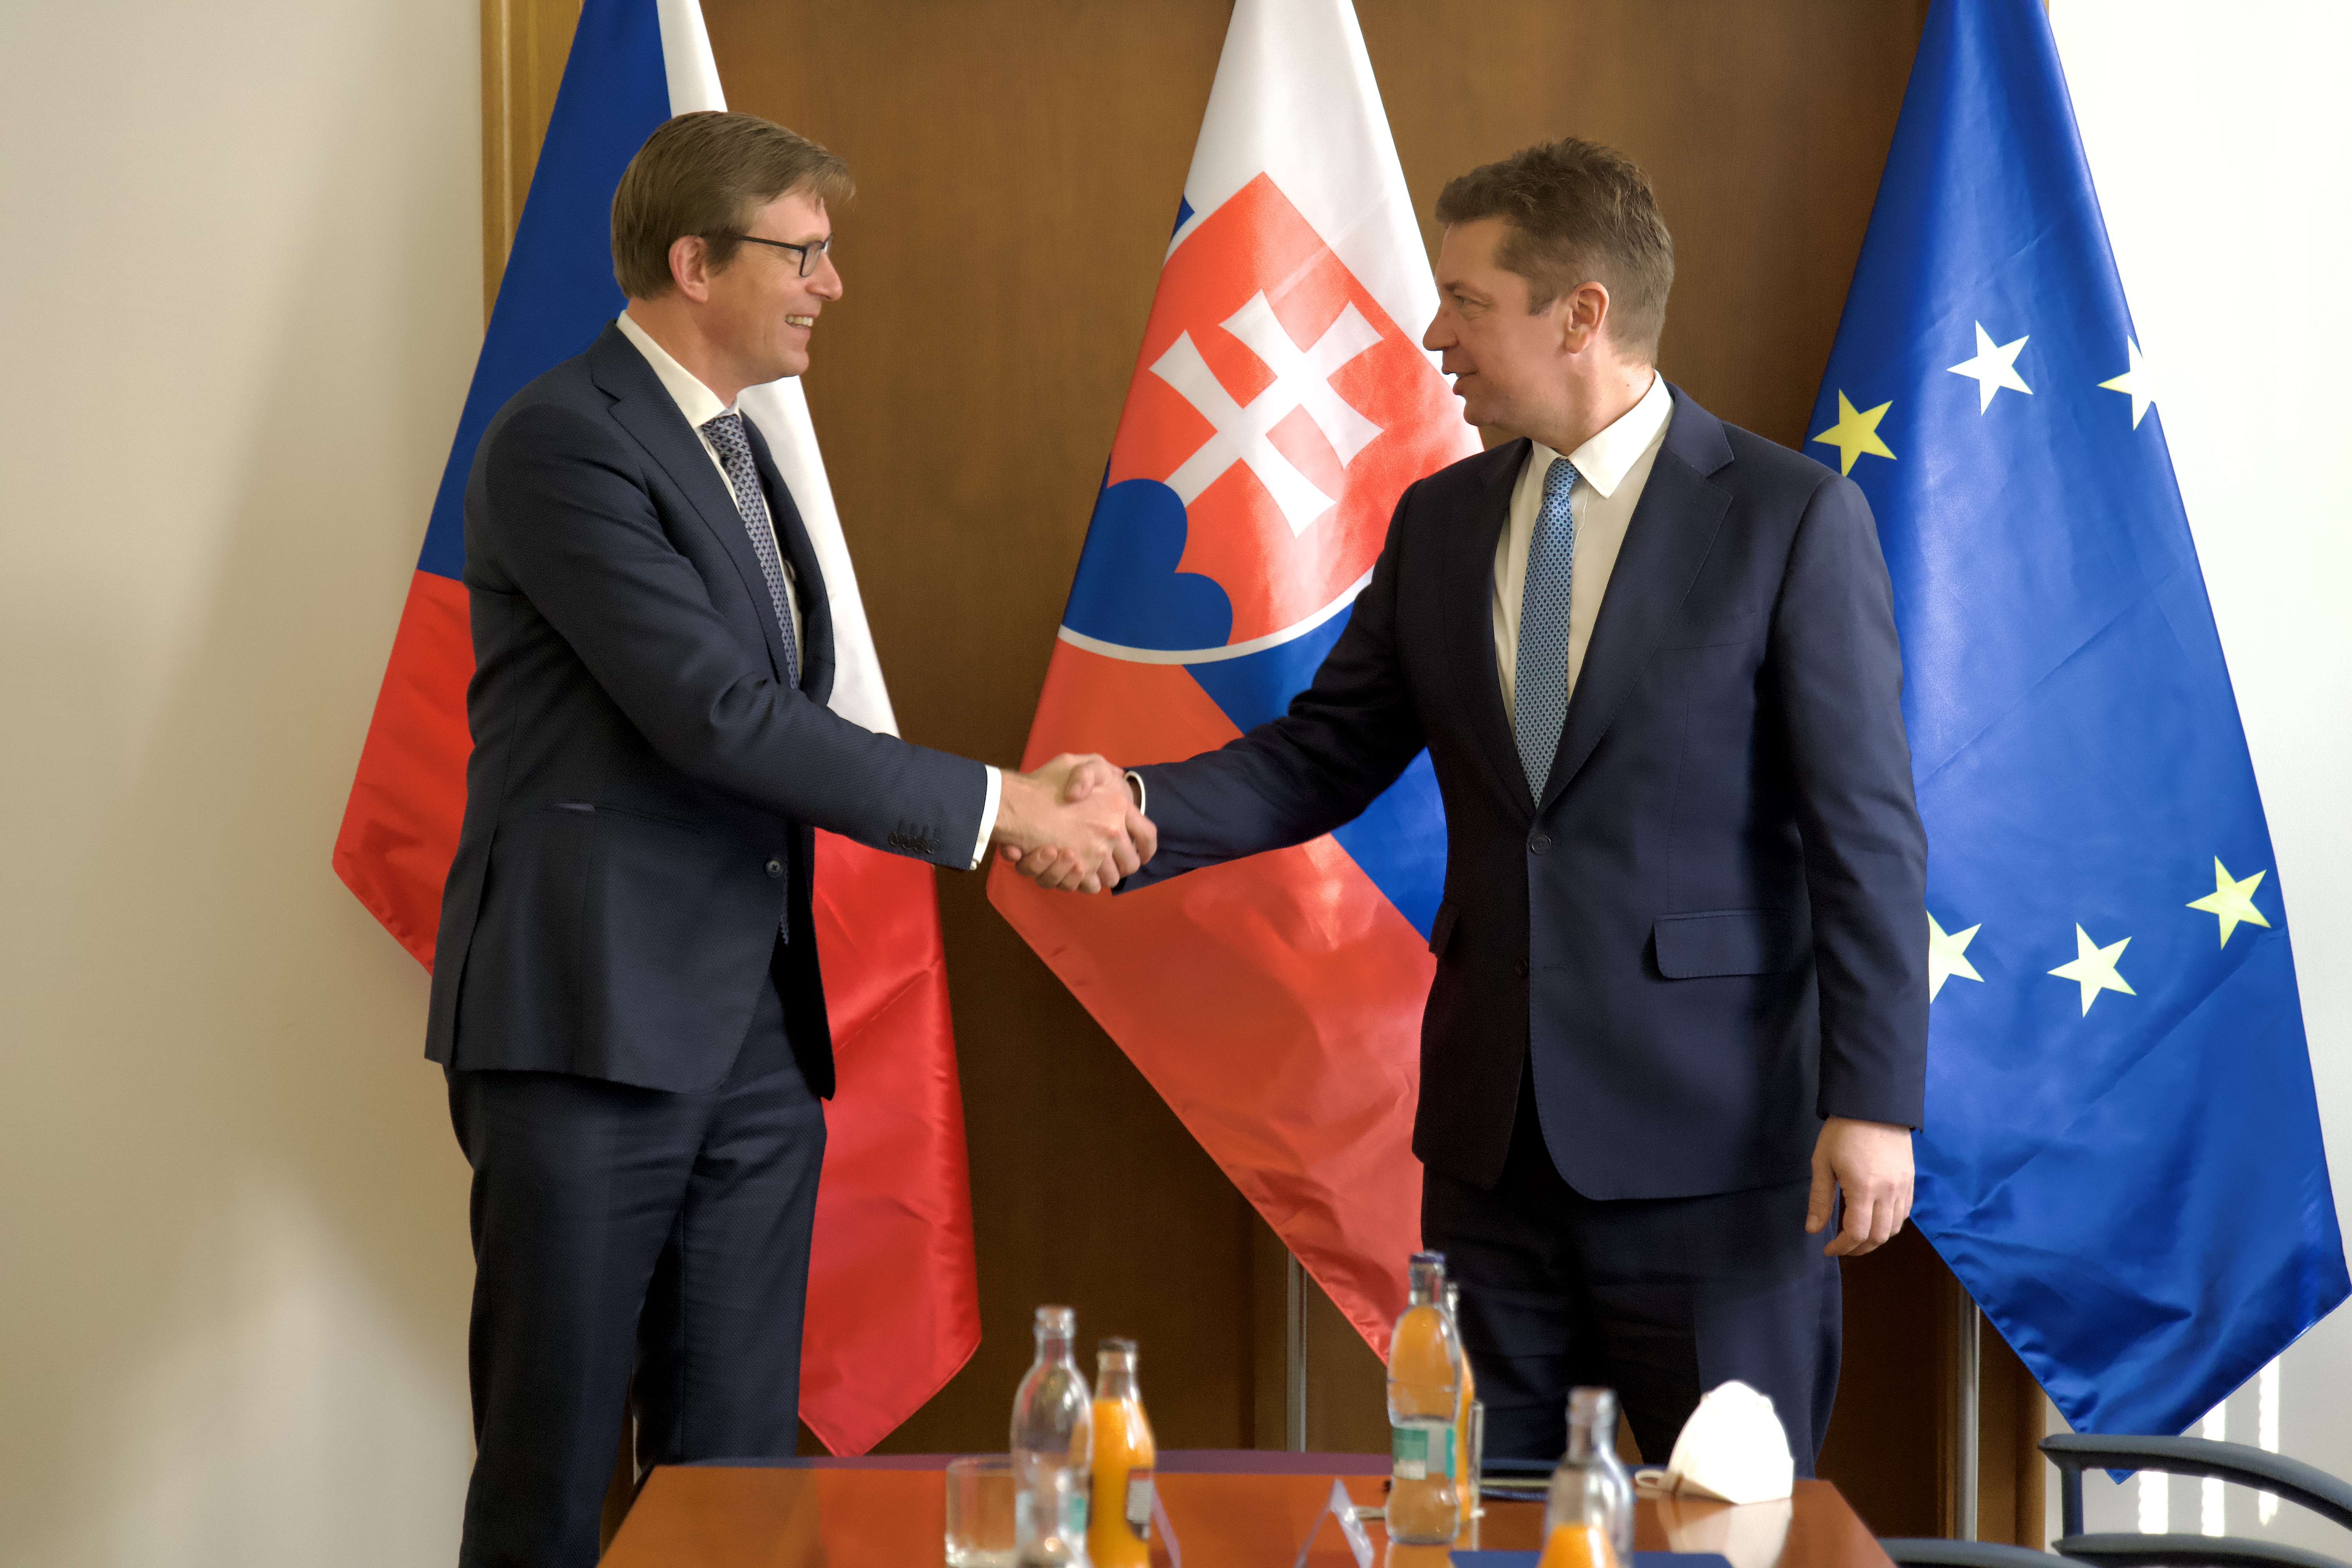 Dopravní spojení mezi ČR a Slovenskem patří mezi naše priority, řekl ministr v Bratislavě